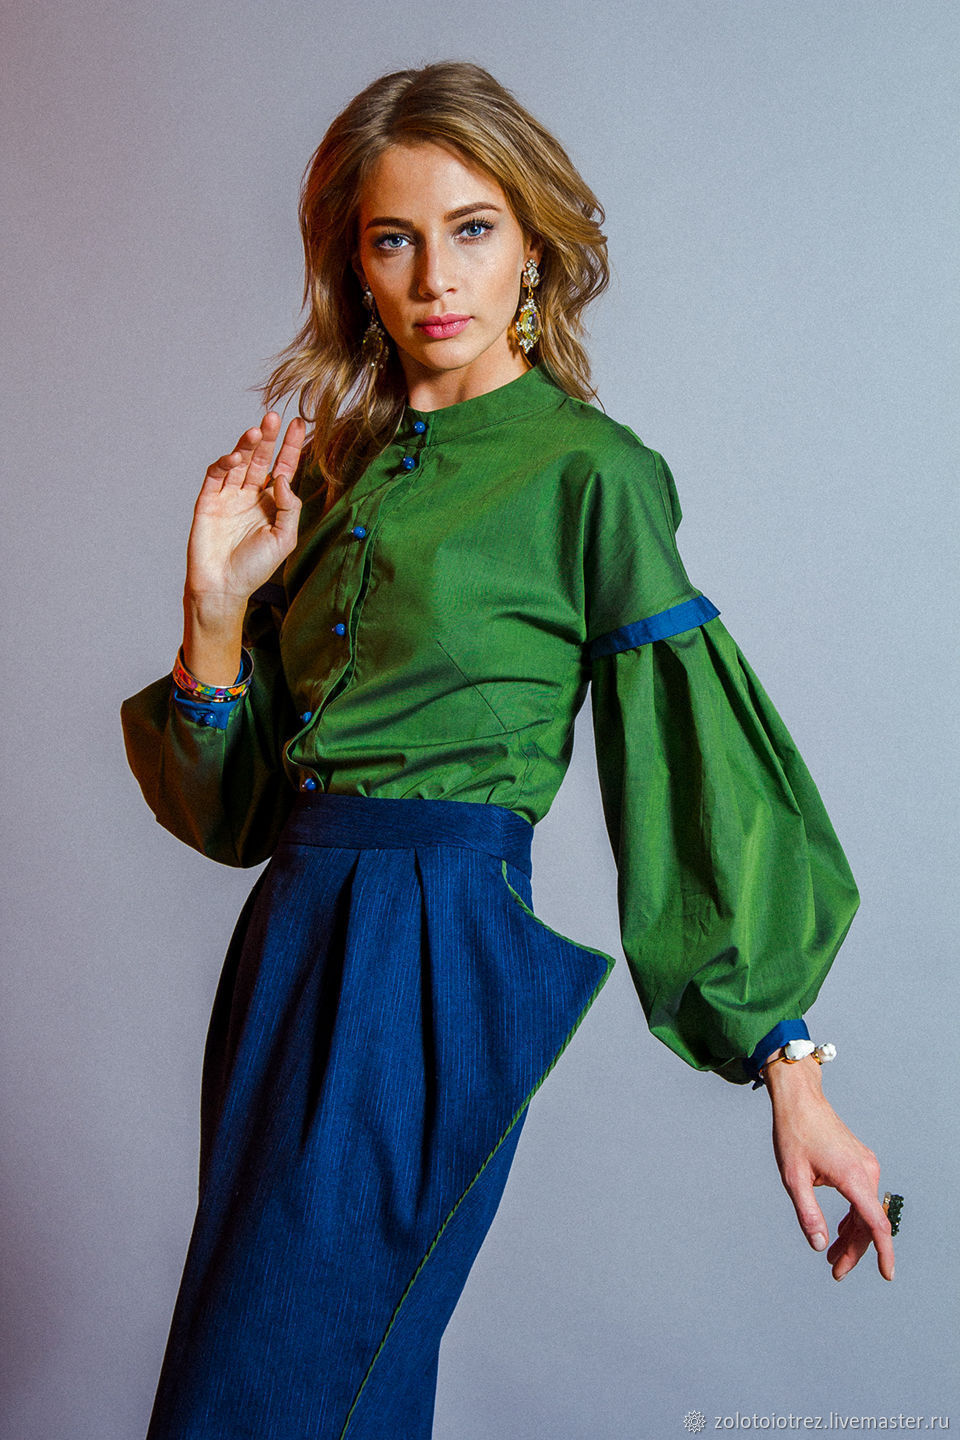 Синяя юбка и зеленая блузка